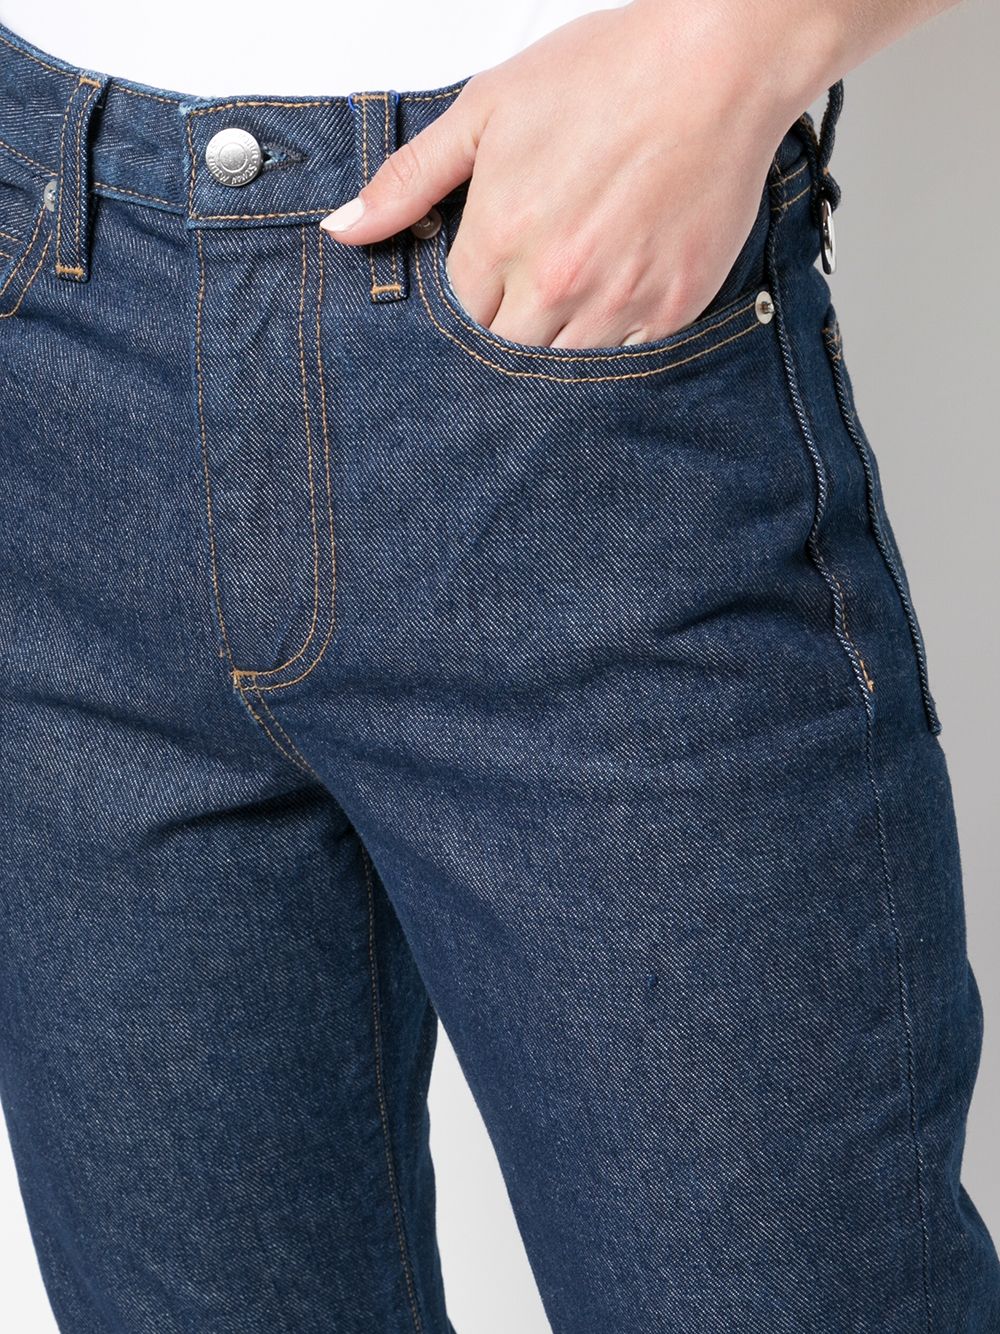 фото Simon miller расклешенные джинсы с декоративной строчкой